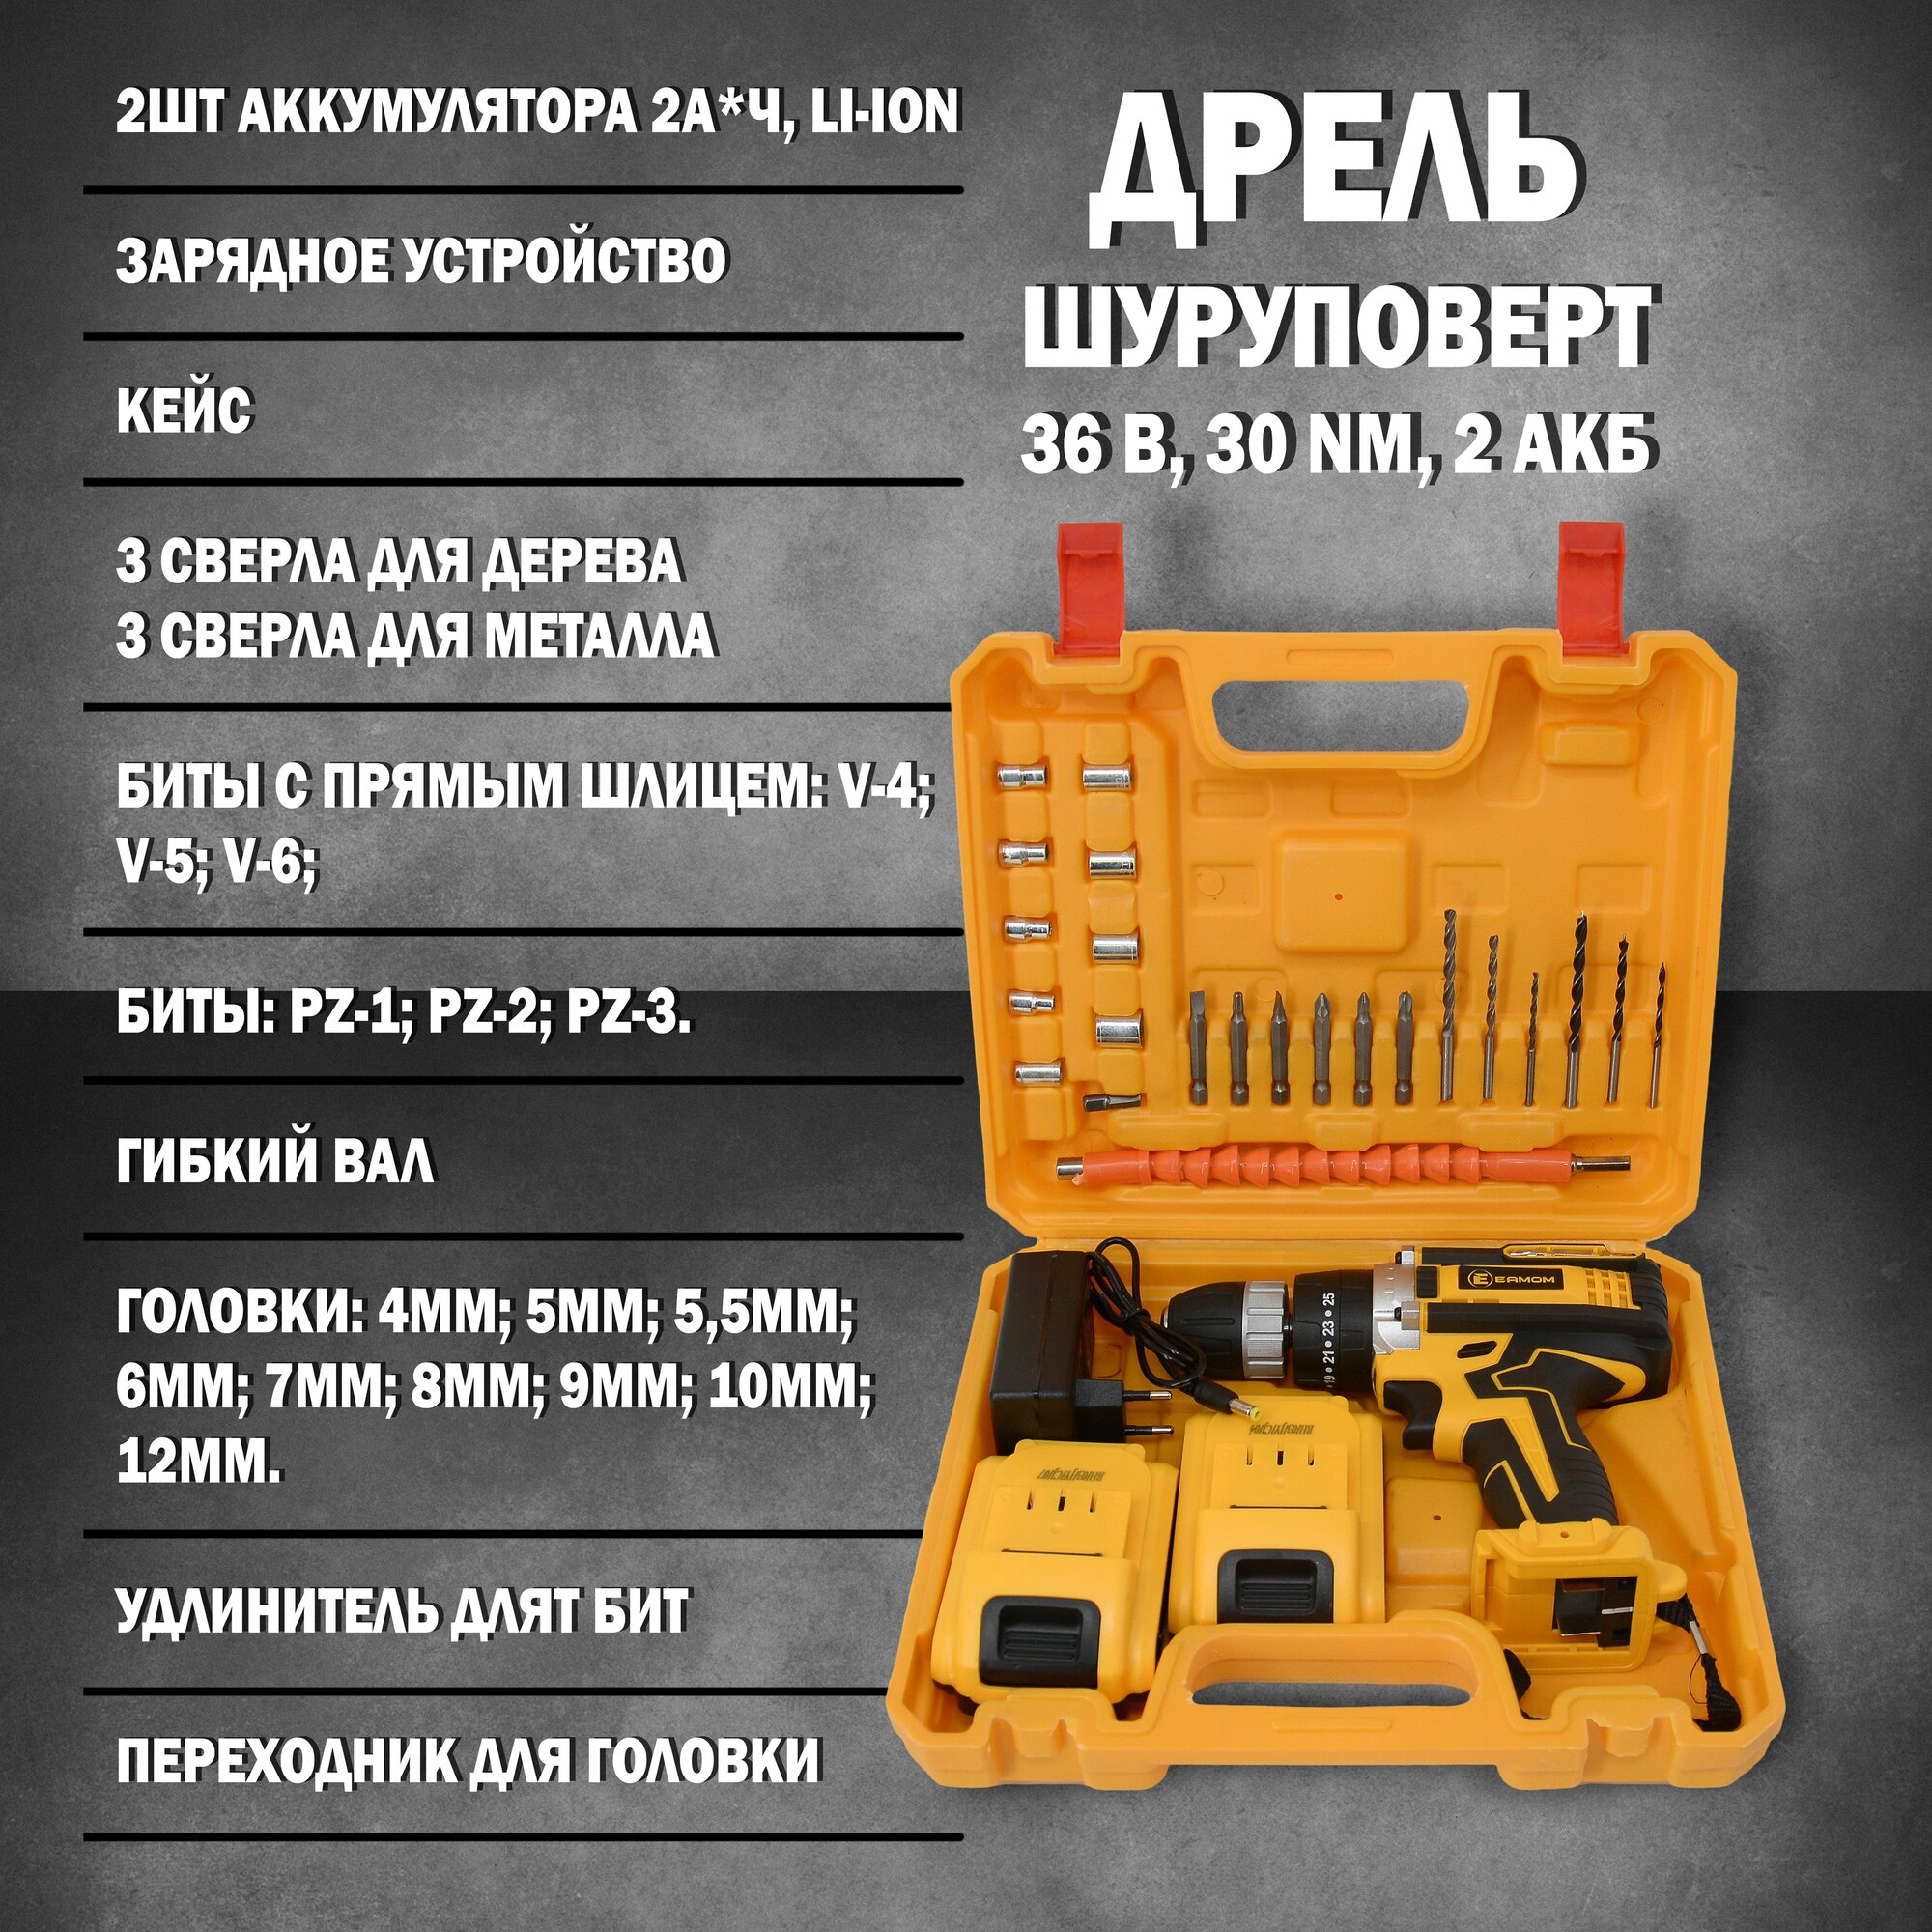 Шуруповерт аккумуляторный с набором инструментов / Дрель-шуруповерт 36 В, 30 Nм, 2 АКБ